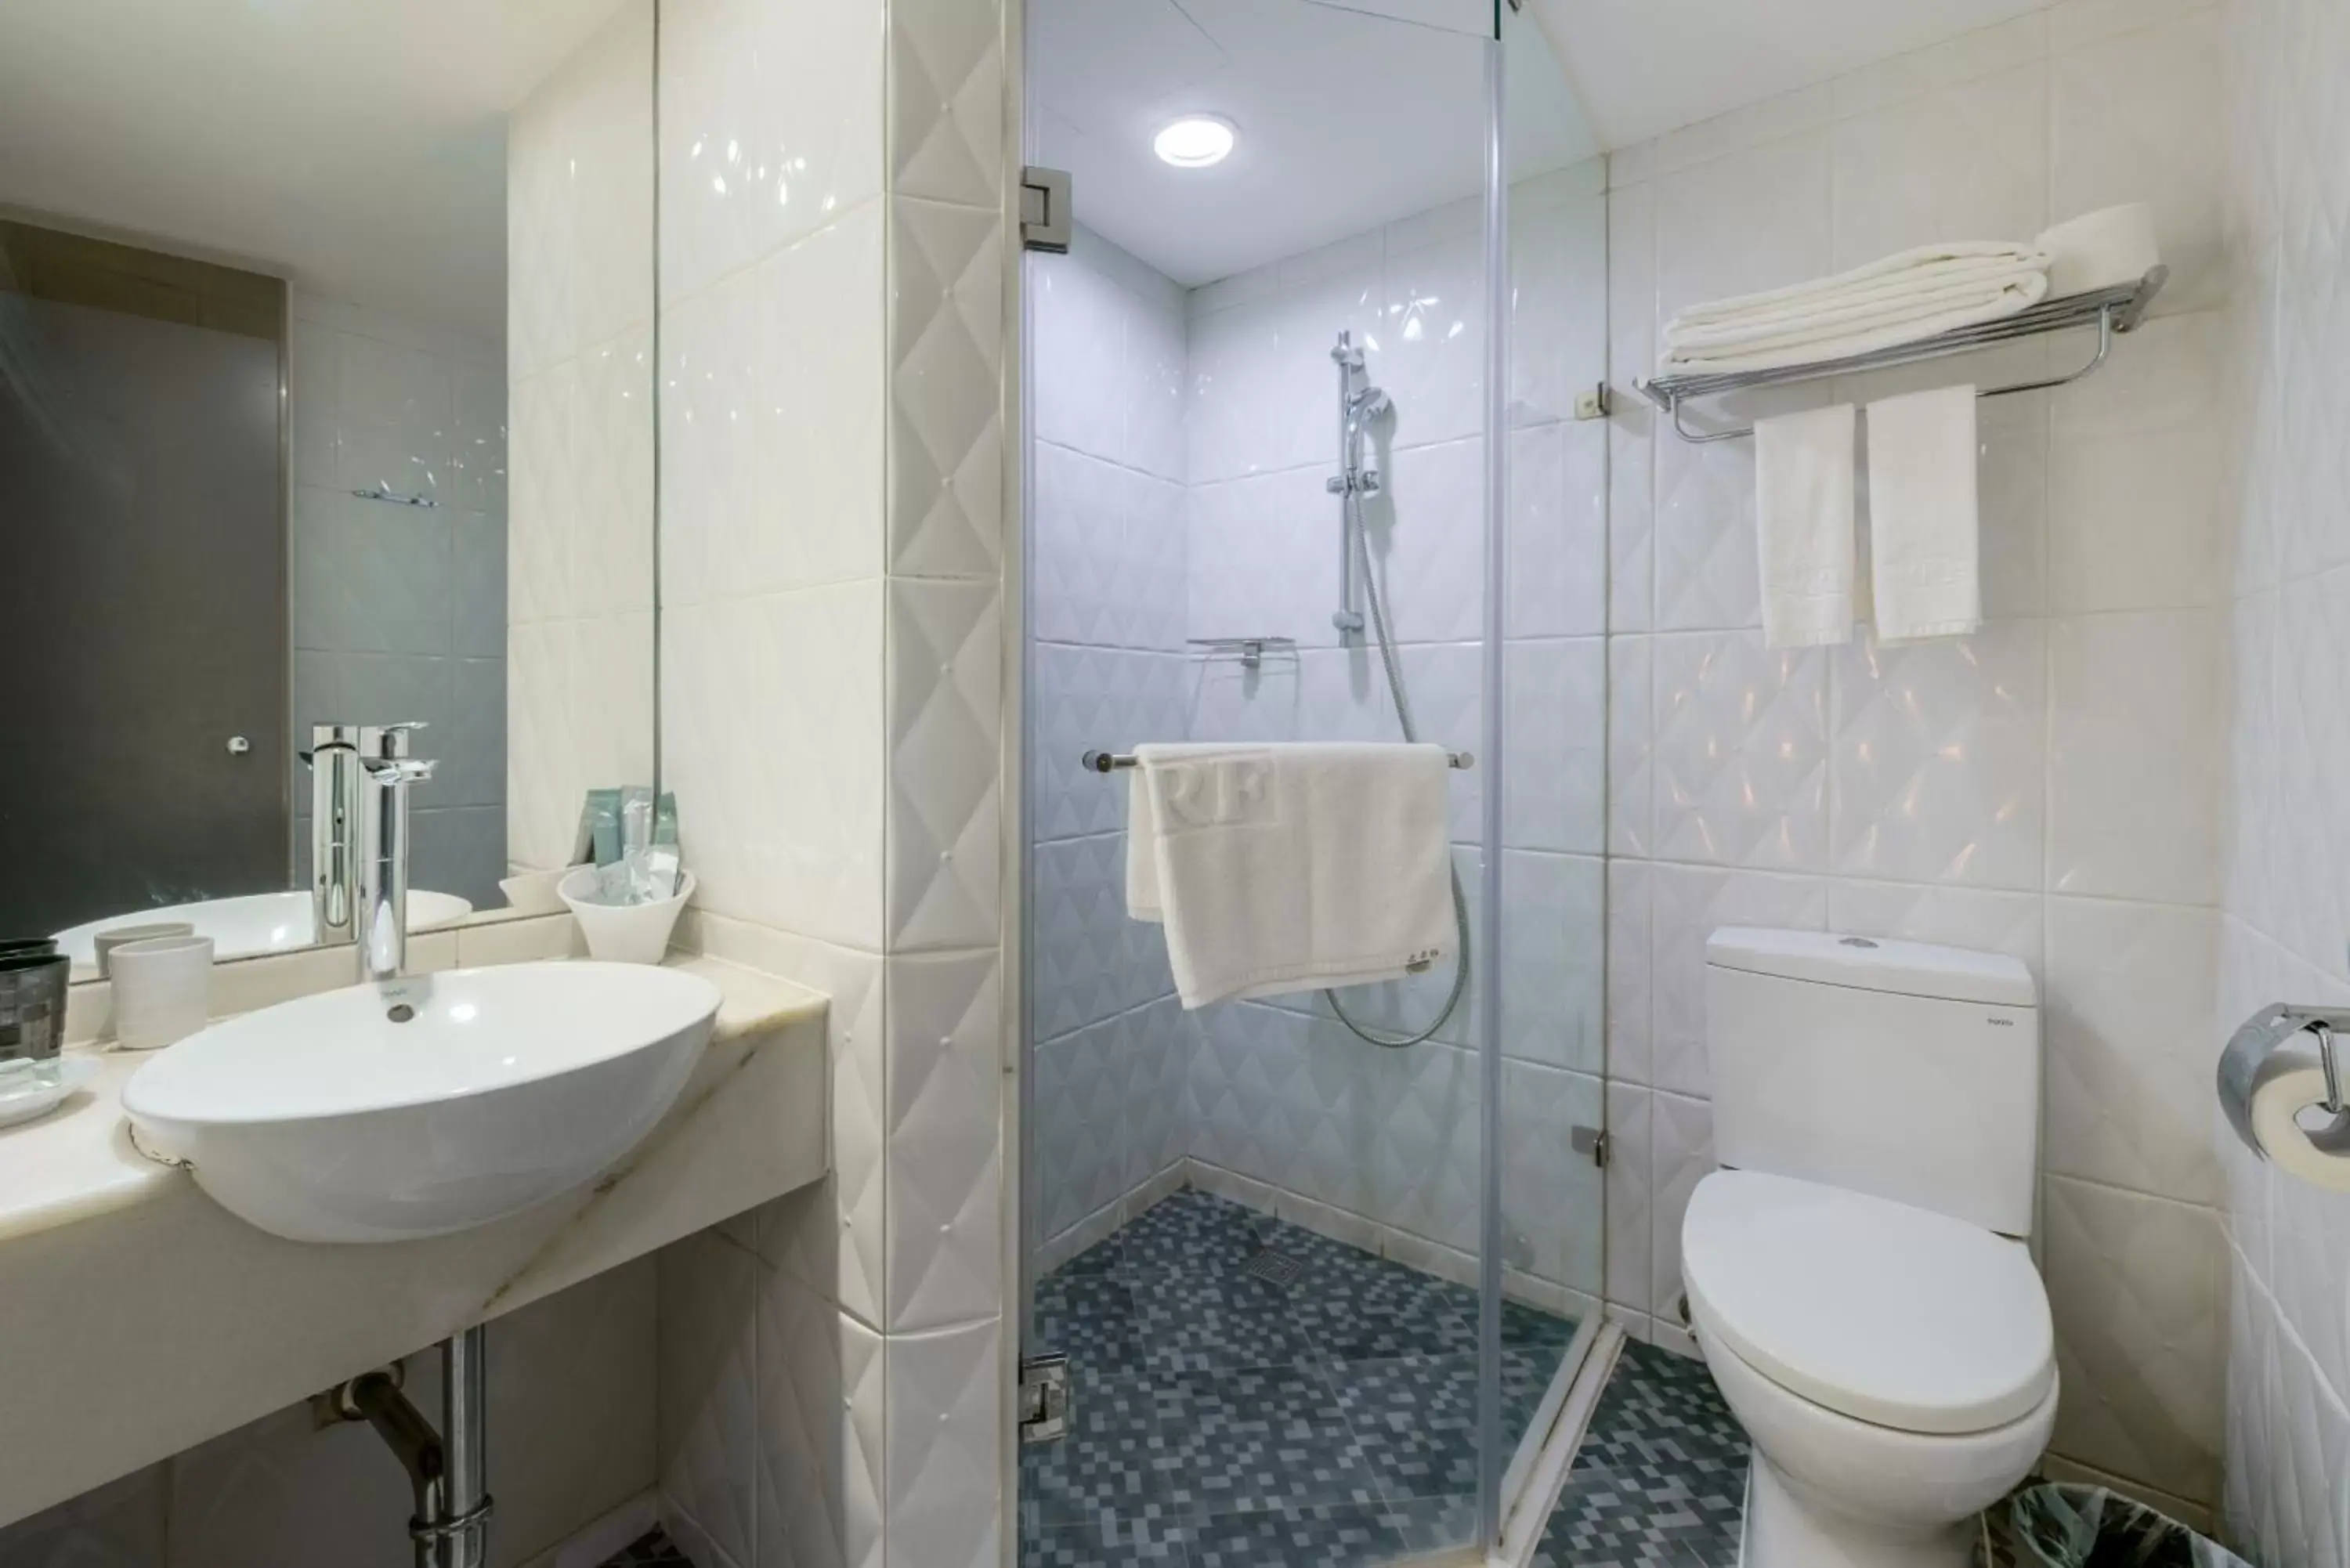 Bathroom in RF Hotel - Zhongxiao